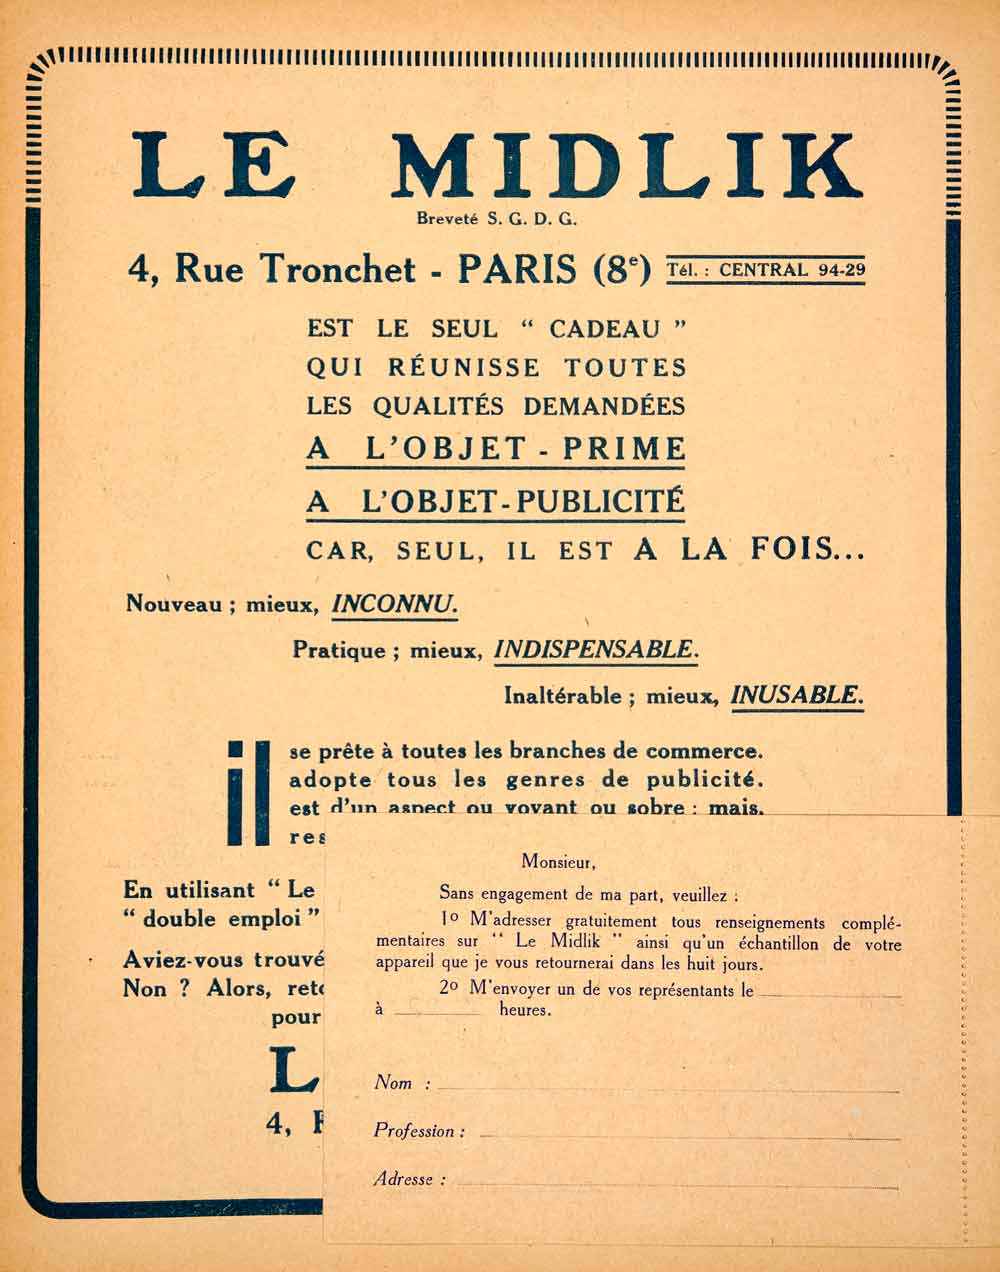 1926 Lithograph Ad Midlik 8 Rue Tronchet Paris Vendre Business Growth VEN4